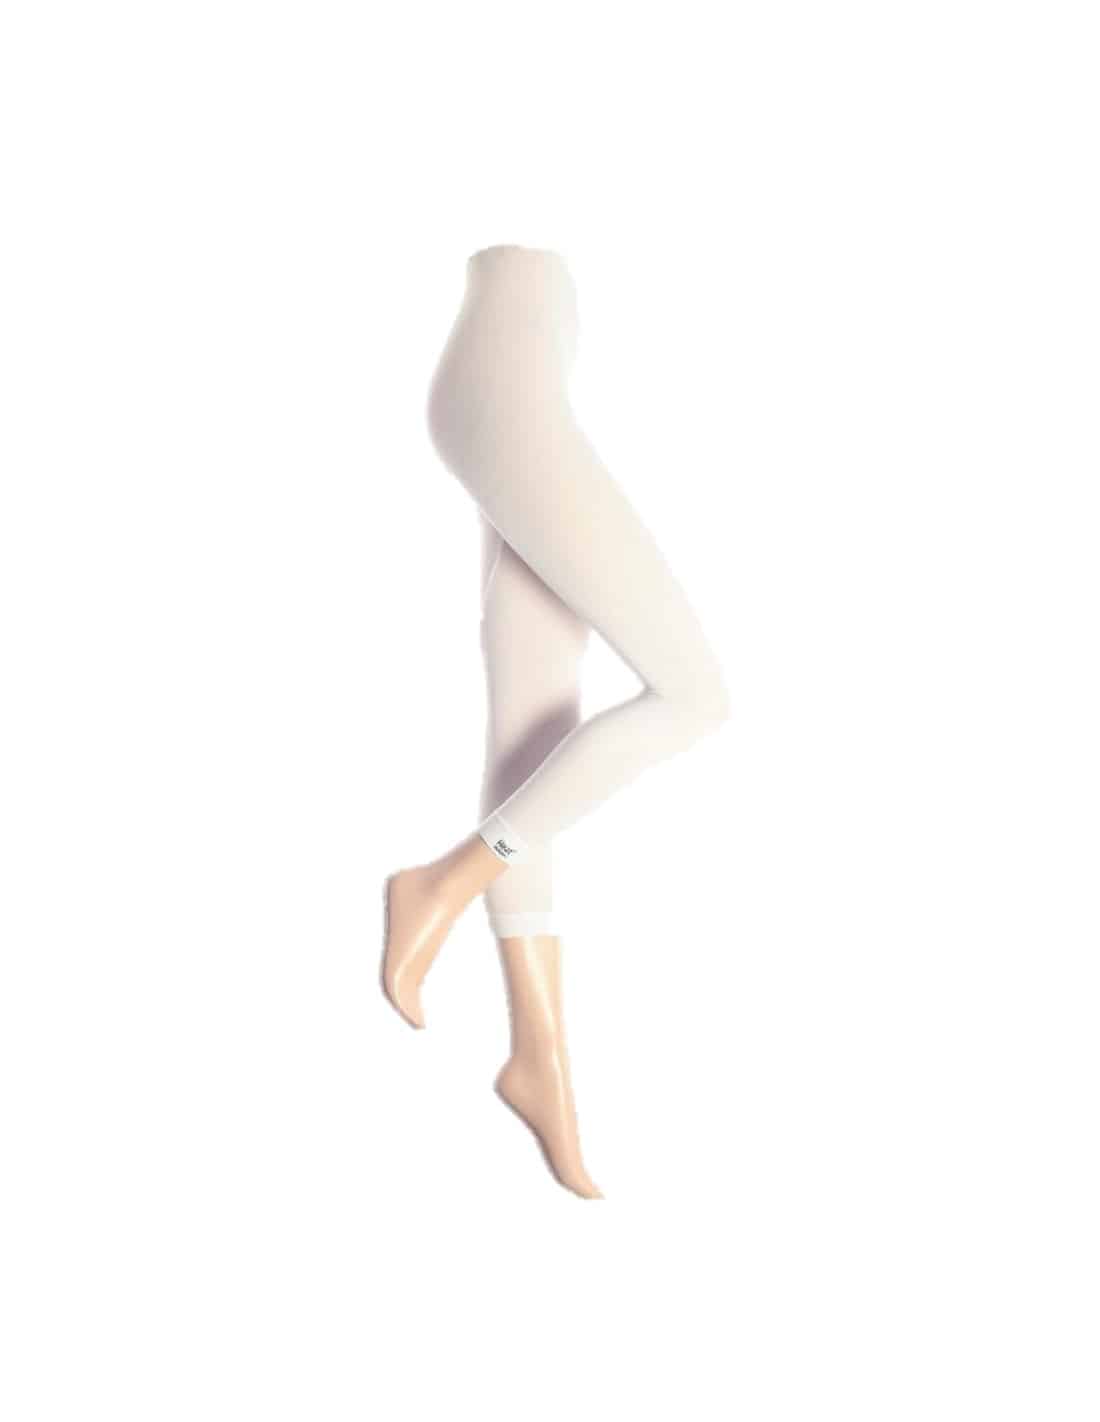 Legging Thermique pour Femme Hiver, Protection -20°C